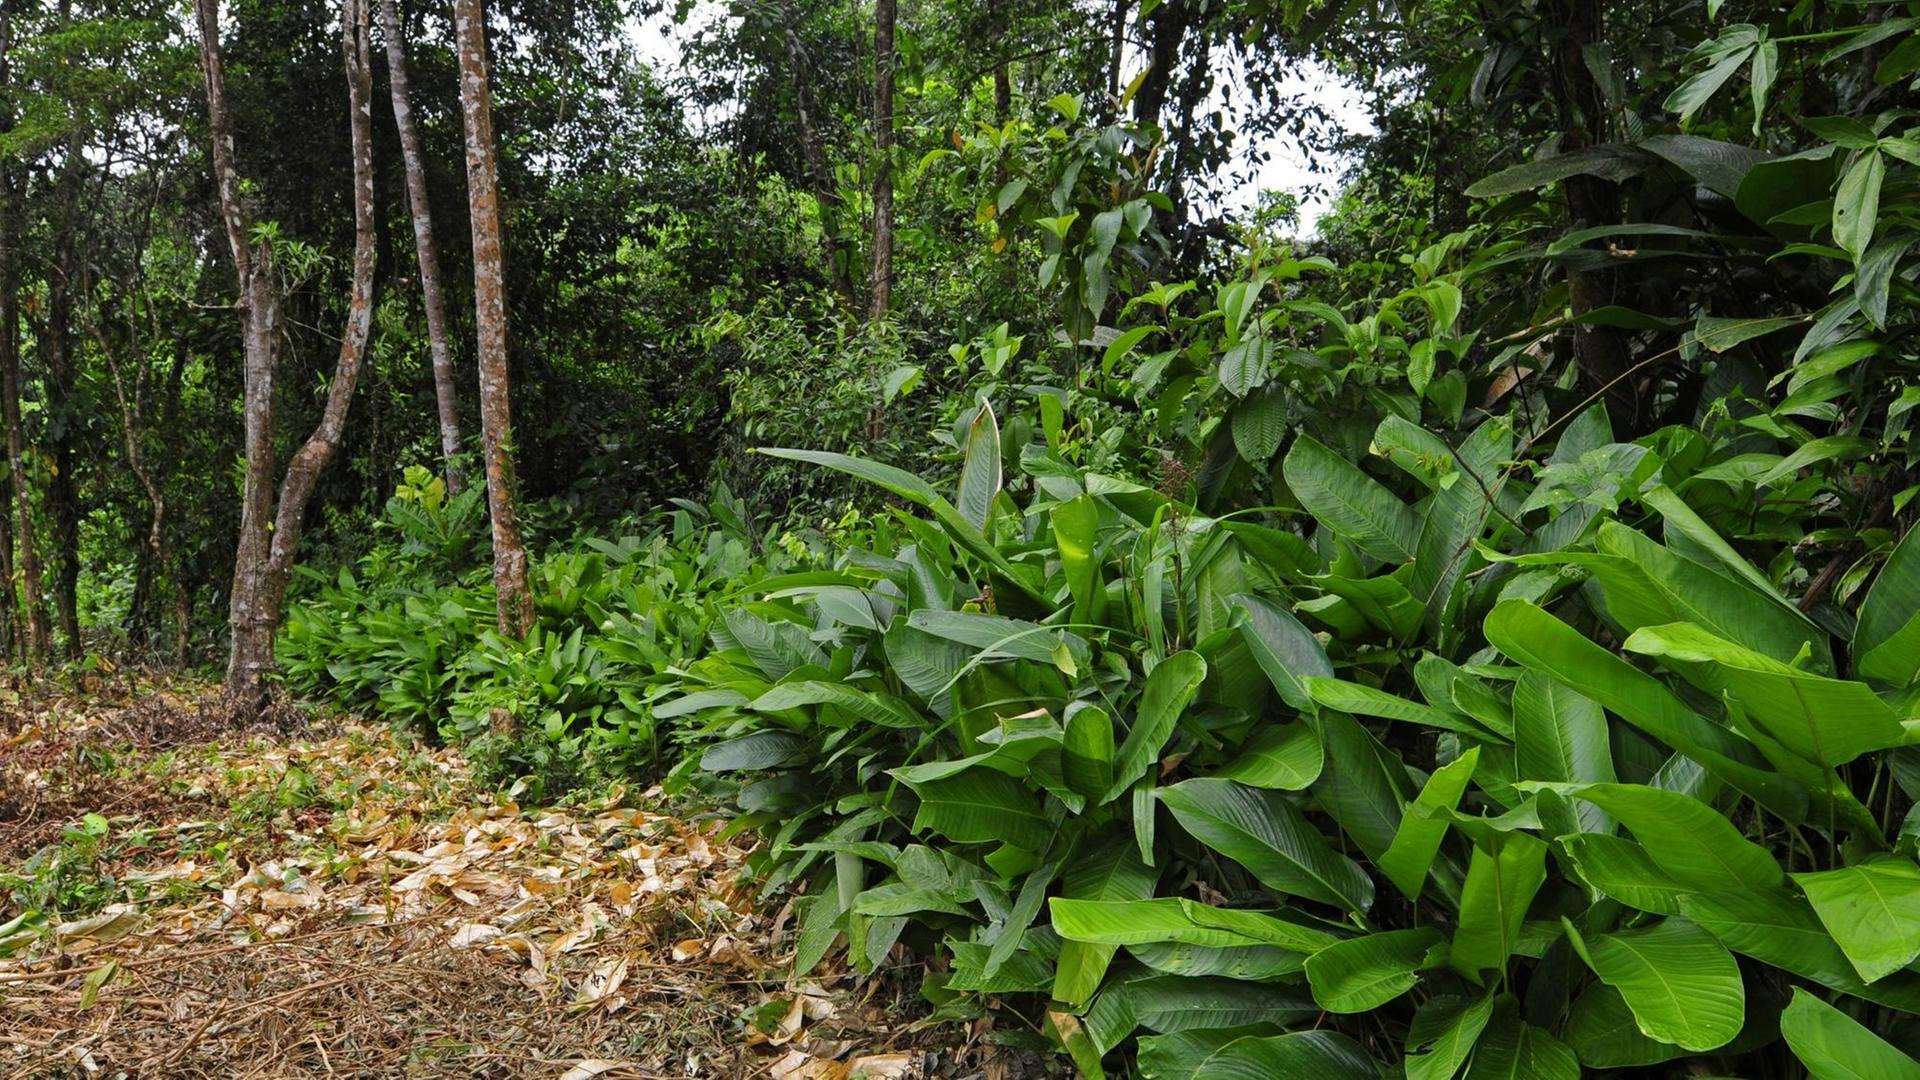 Sekundärwald am Rande des tropischen Regenwaldes in Honduras im Biosphärenreservat Las Marias.